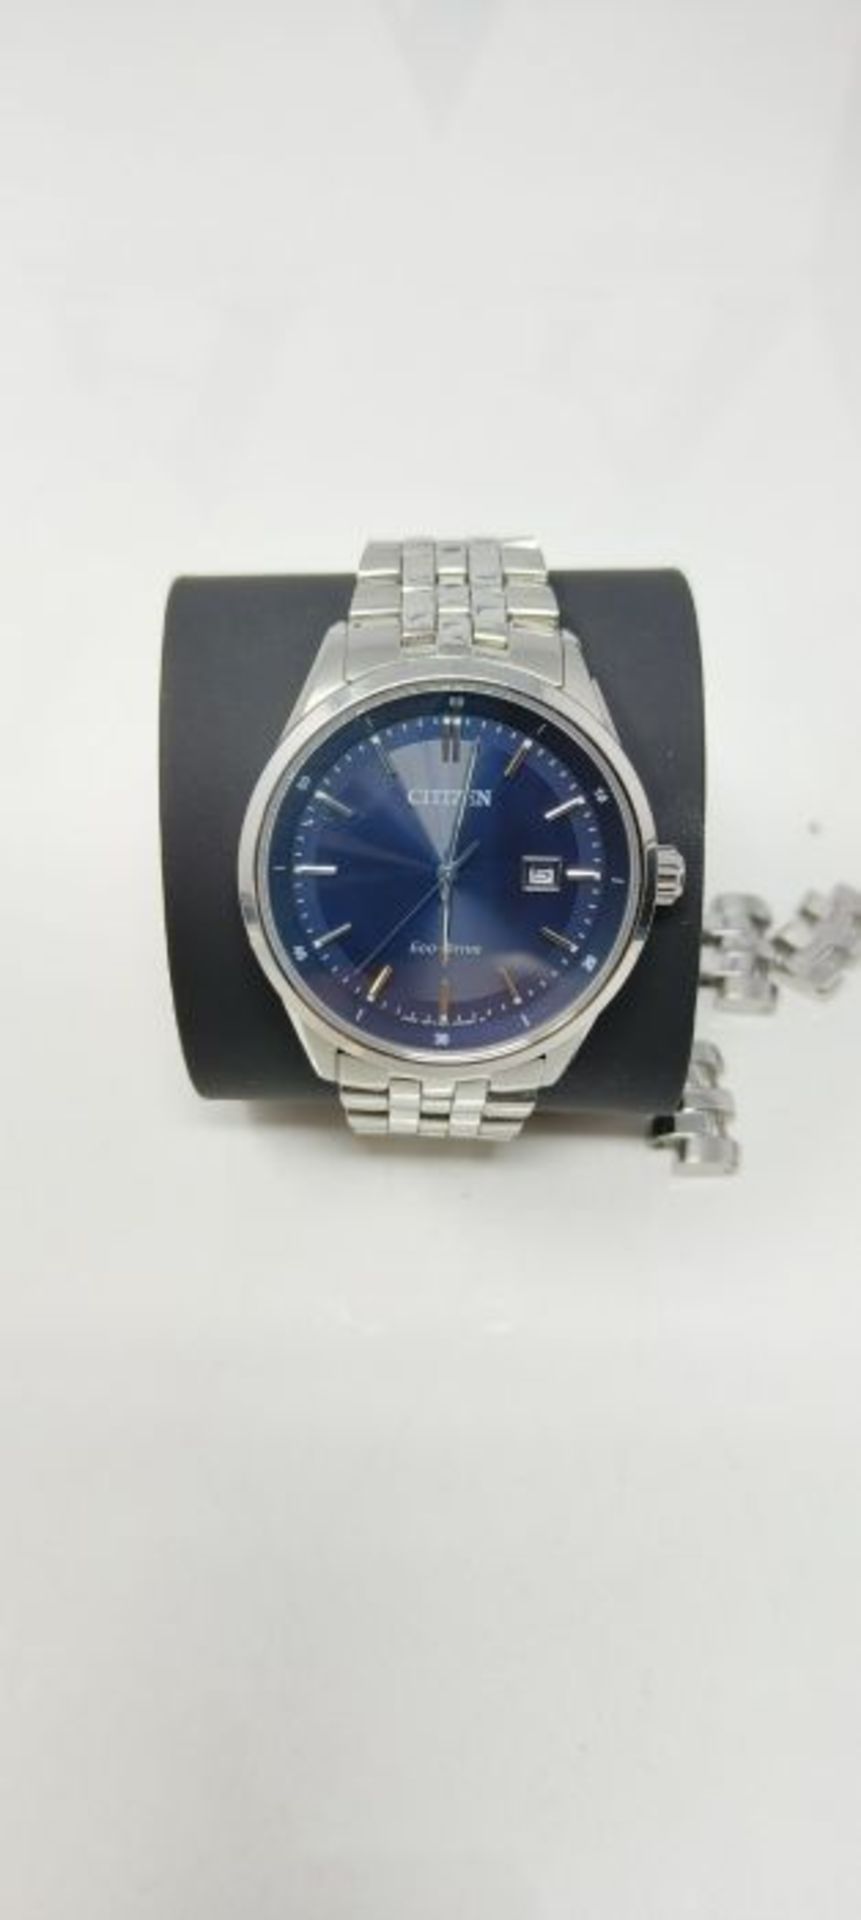 RRP £125.00 Citizen Eco-Drive Men's Bracelet Watch - Image 3 of 3